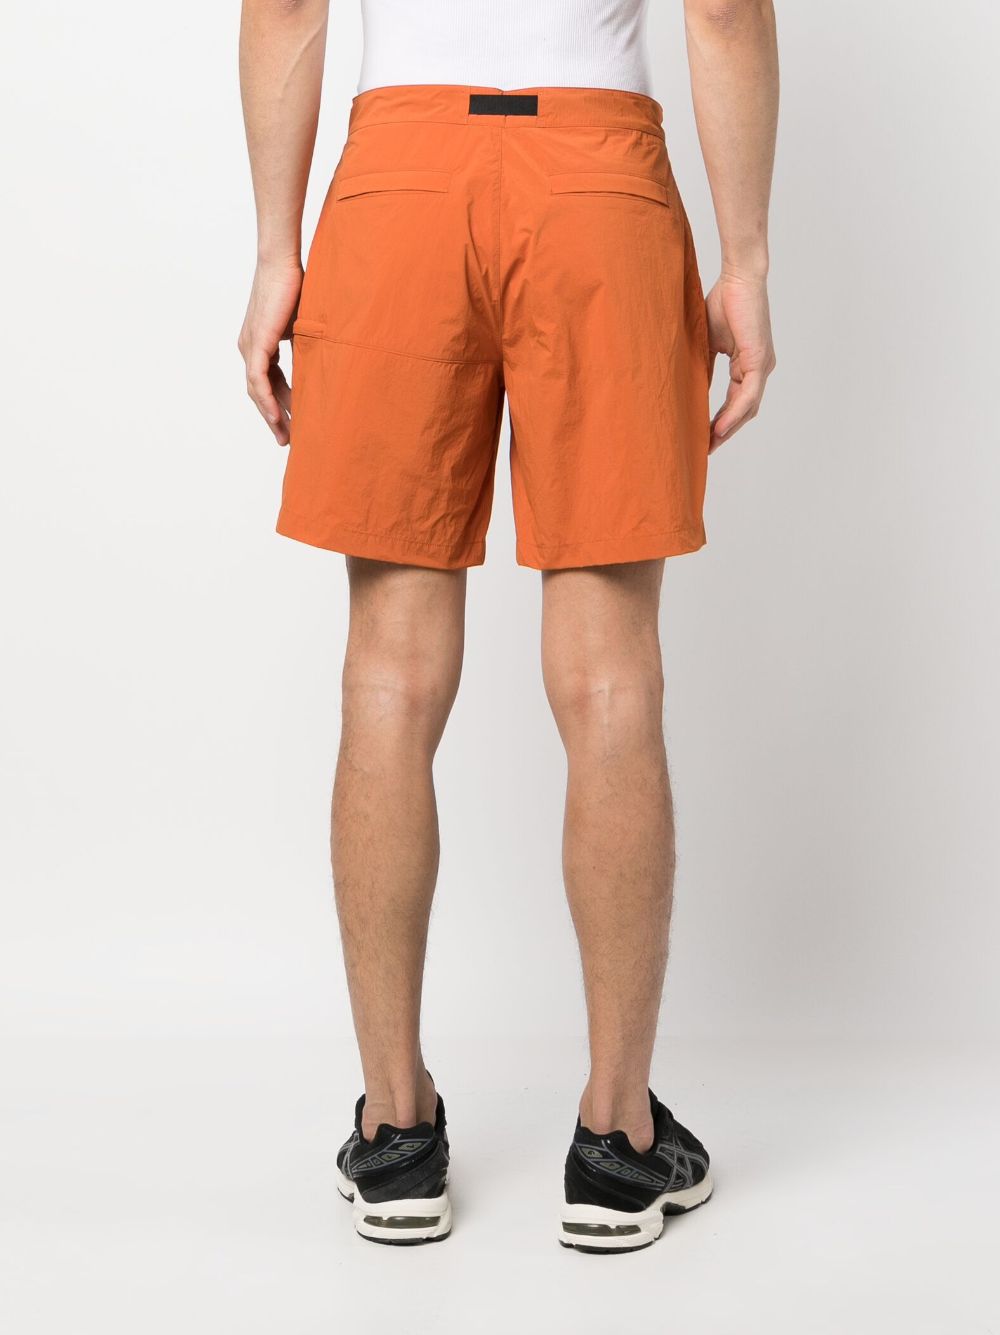 K Way Shorts Orange